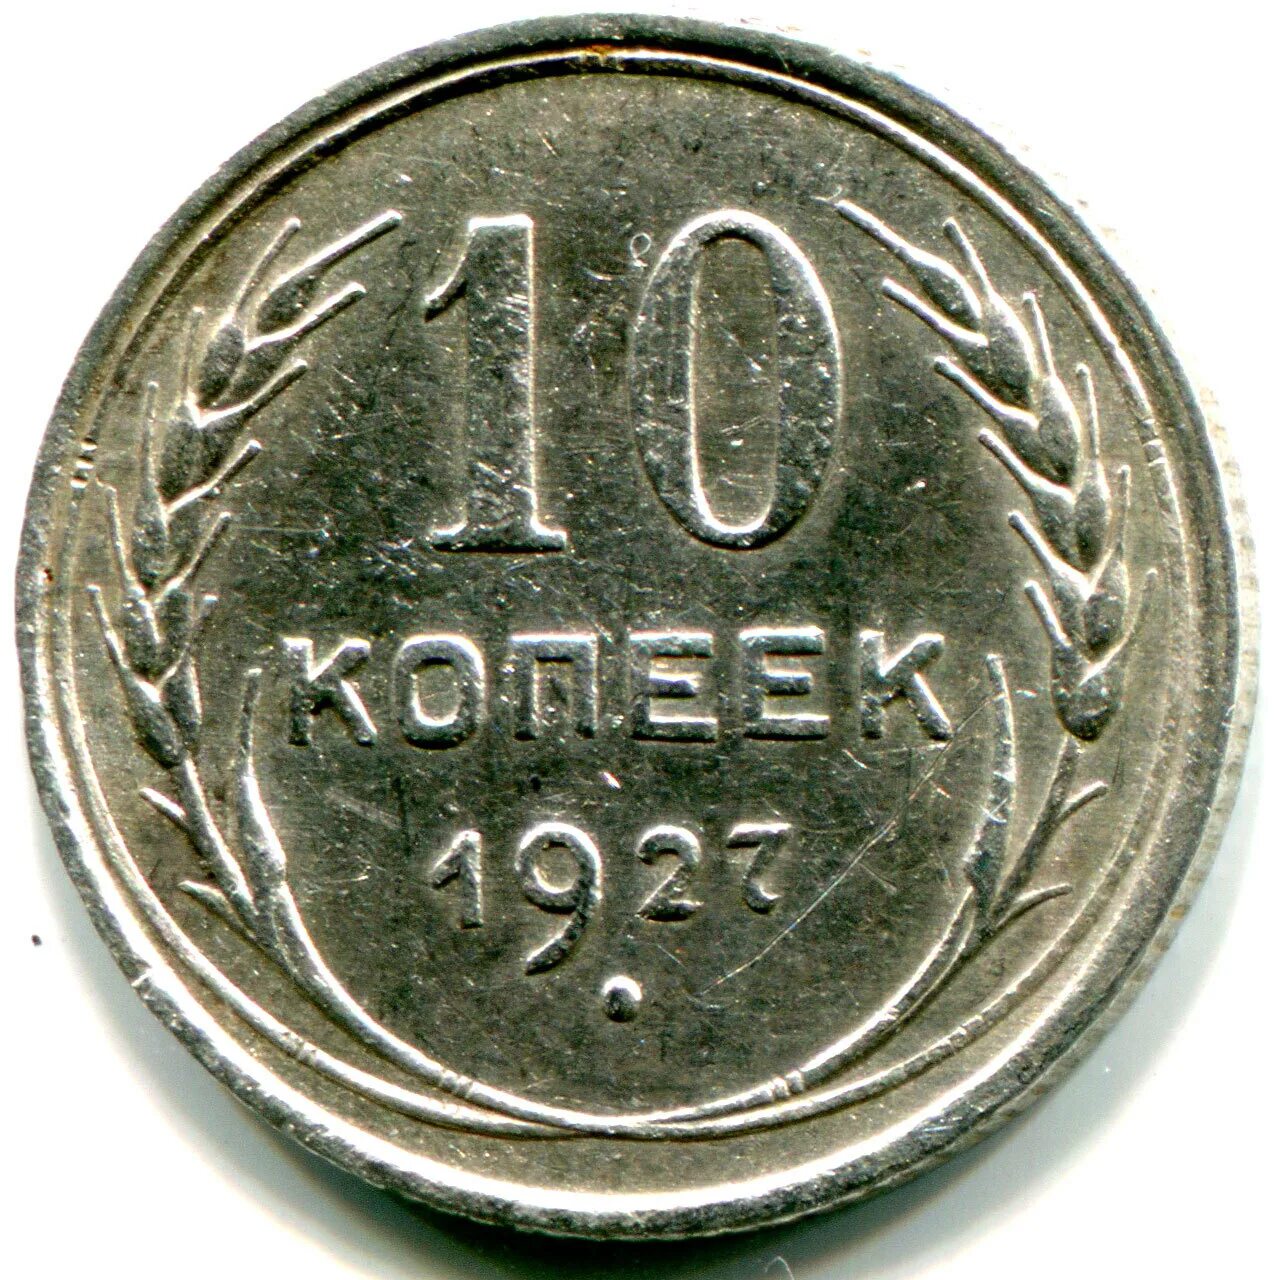 20 Копеек 1927 1967. 10 Копеек СССР 1927г. Монета 10 копеек СССР. 20 Копеек 1927 года.